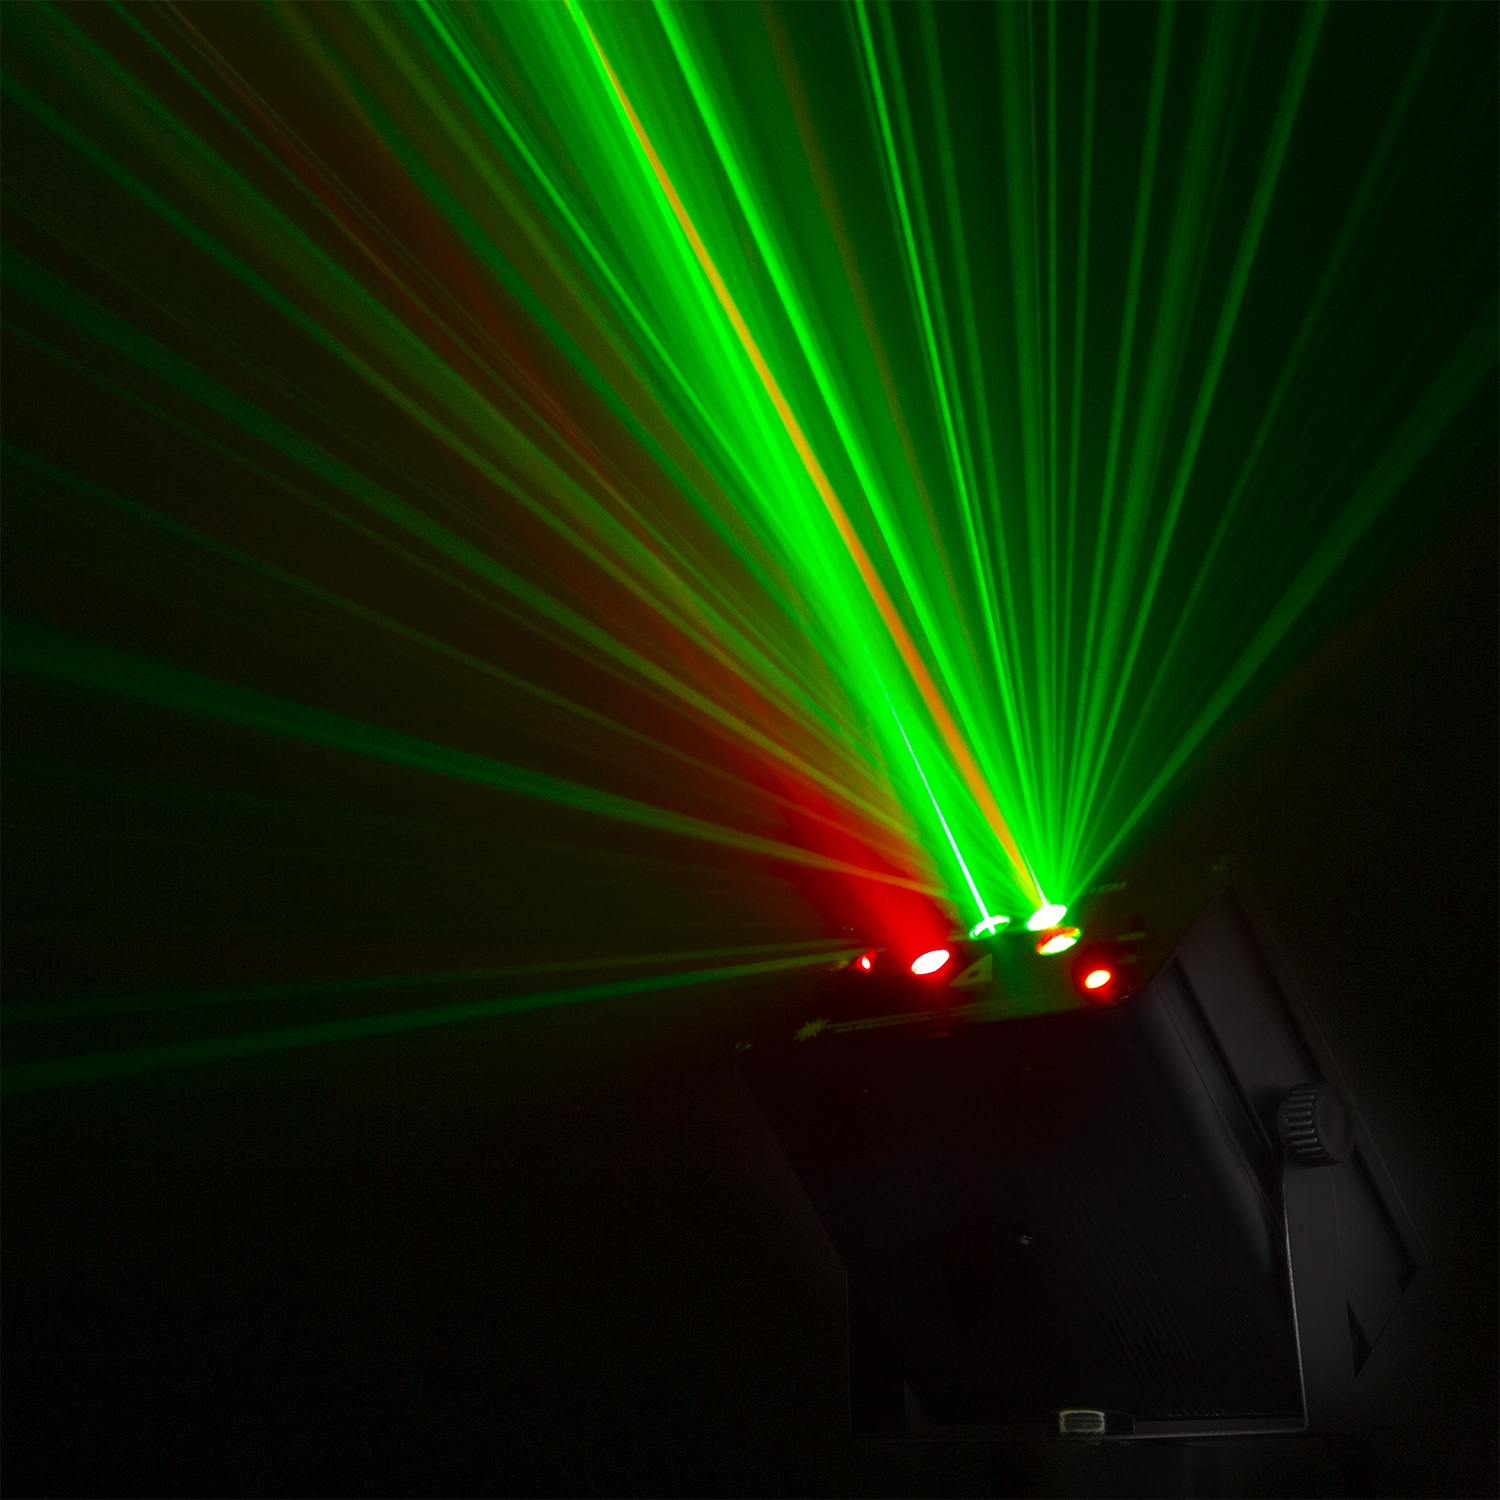 BeamZ Athena batteri disco laser med 2 gobo lasrar och multicolor LED